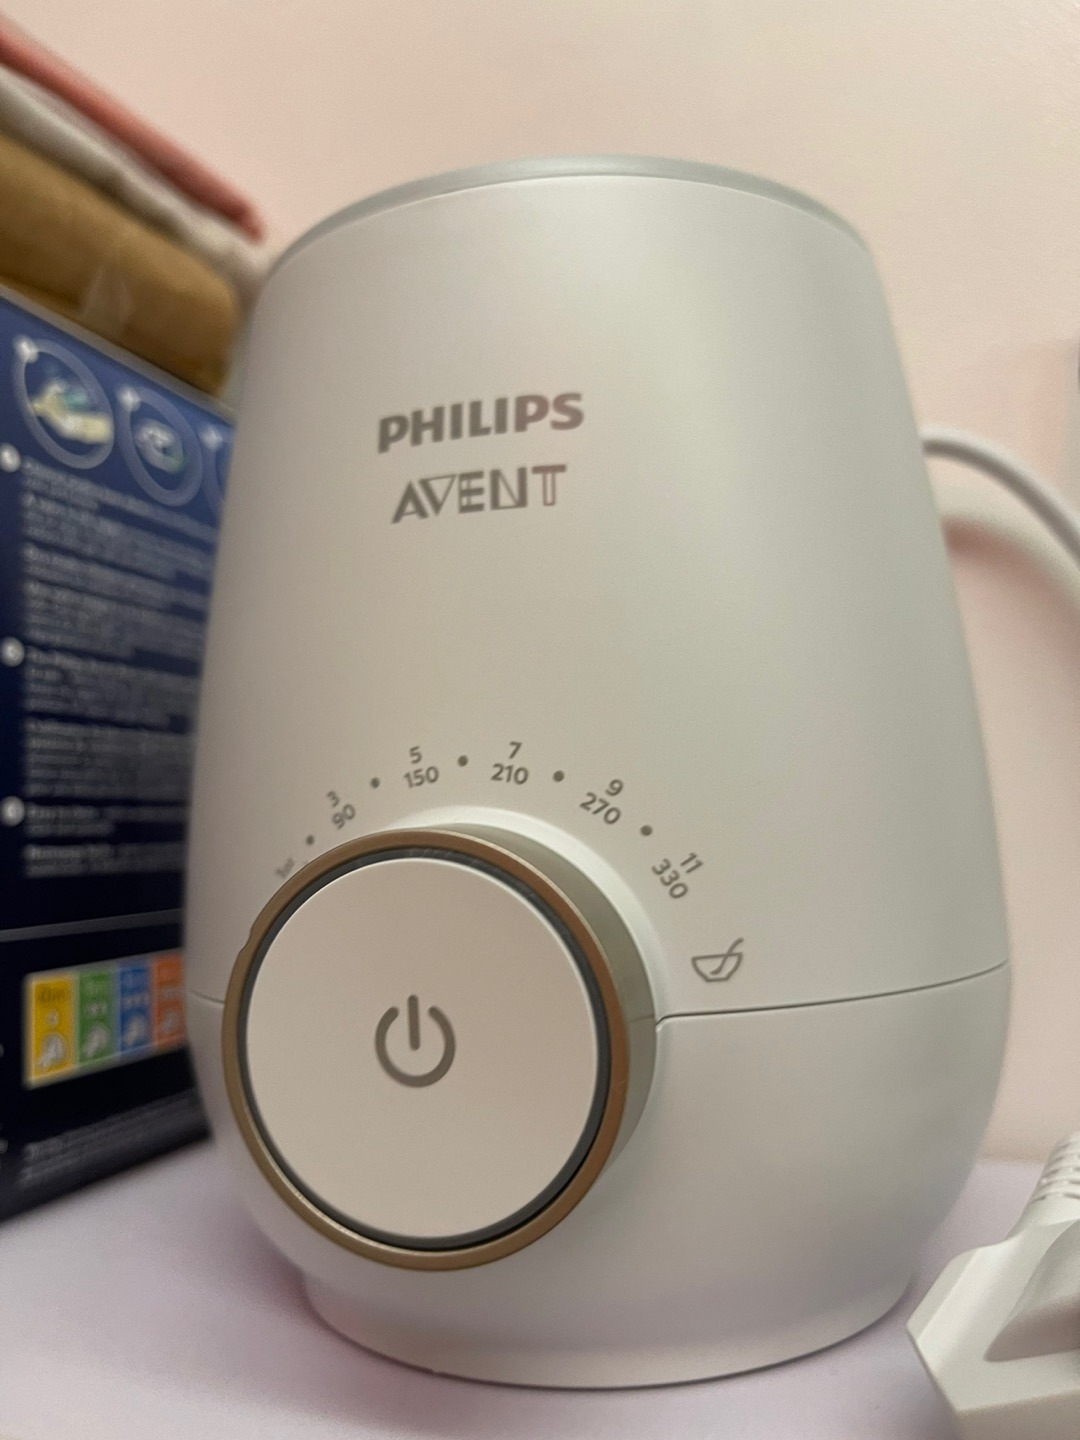 Philips Avent nổi tiếng với nhiều dòng sản phẩm cho mẹ và bé